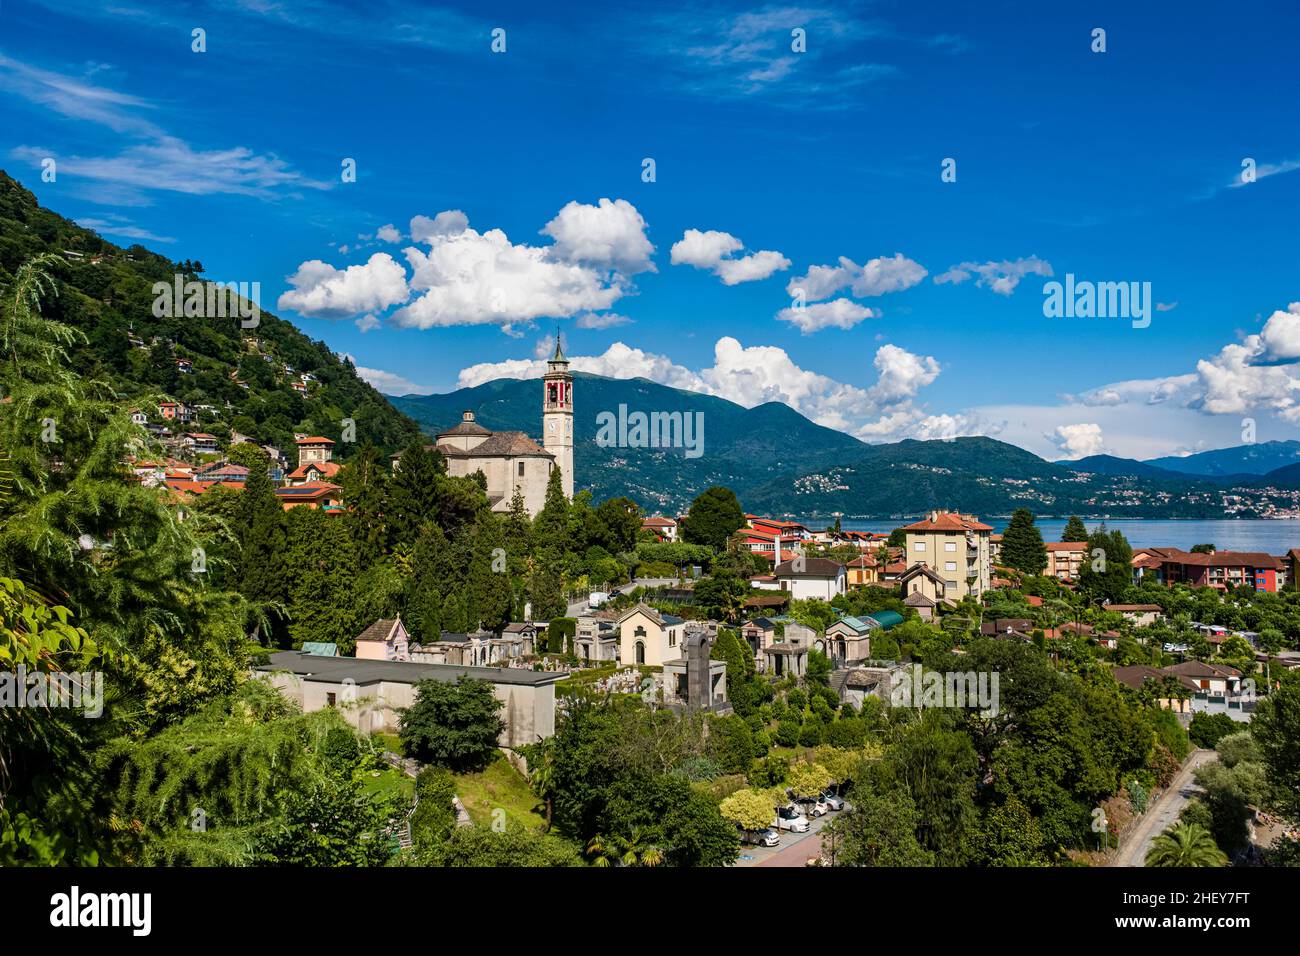 View of Cannero, the church Chiesa Parrocchiale di San Giorgio, Lake Maggiore and the surrounding mountains. Stock Photo